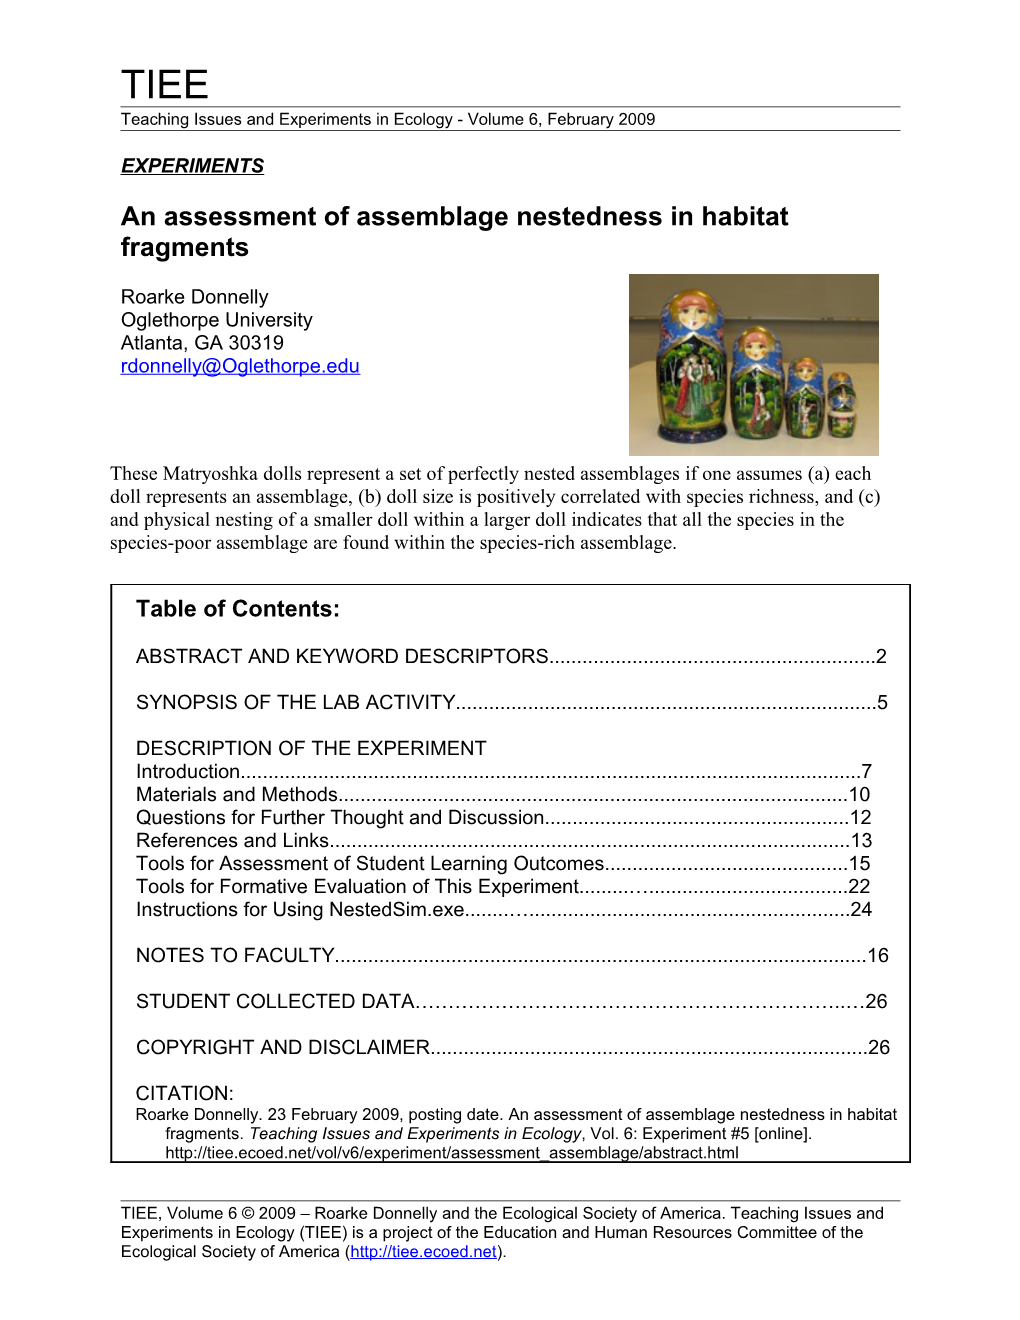 An Assessment of Assemblage Nestedness in Habitat Fragments